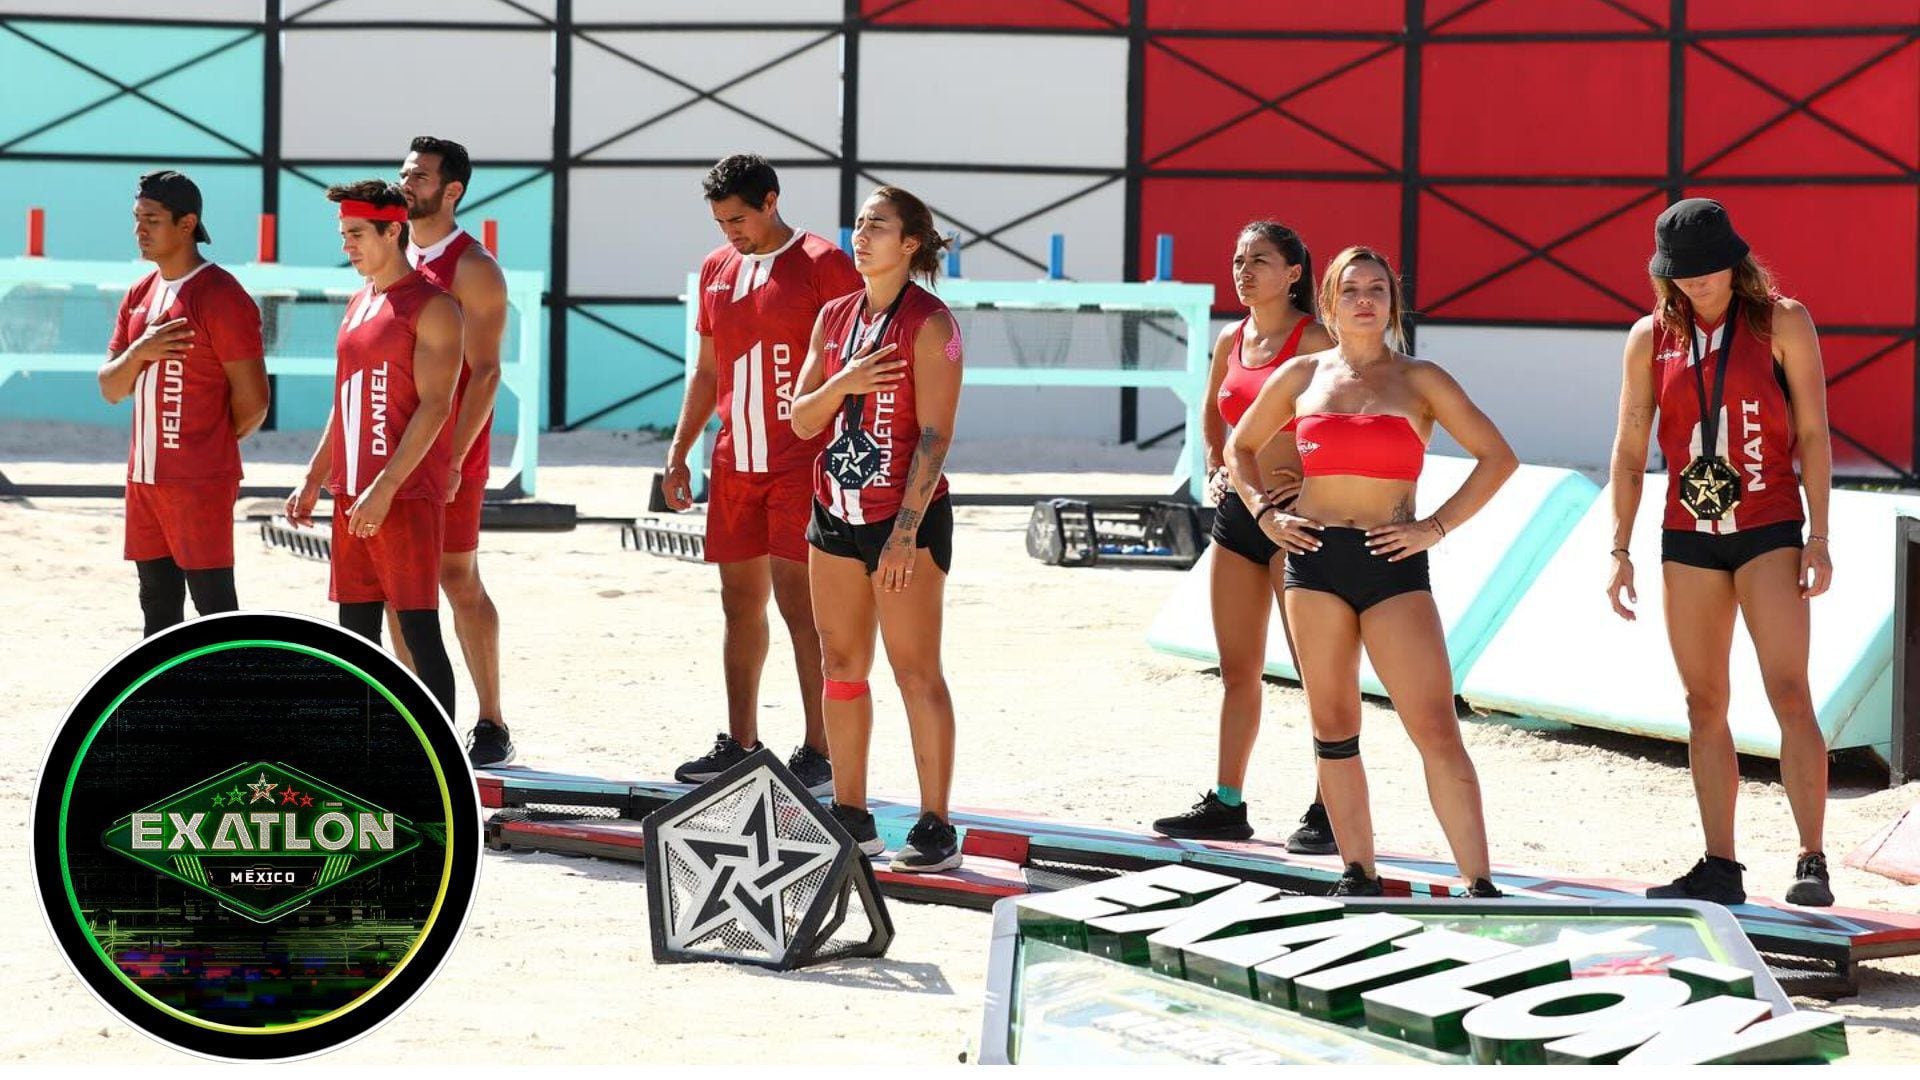 Integrantes del equipo rojo del reality de competencia Exatlón México de la Televisora TV Azteca.